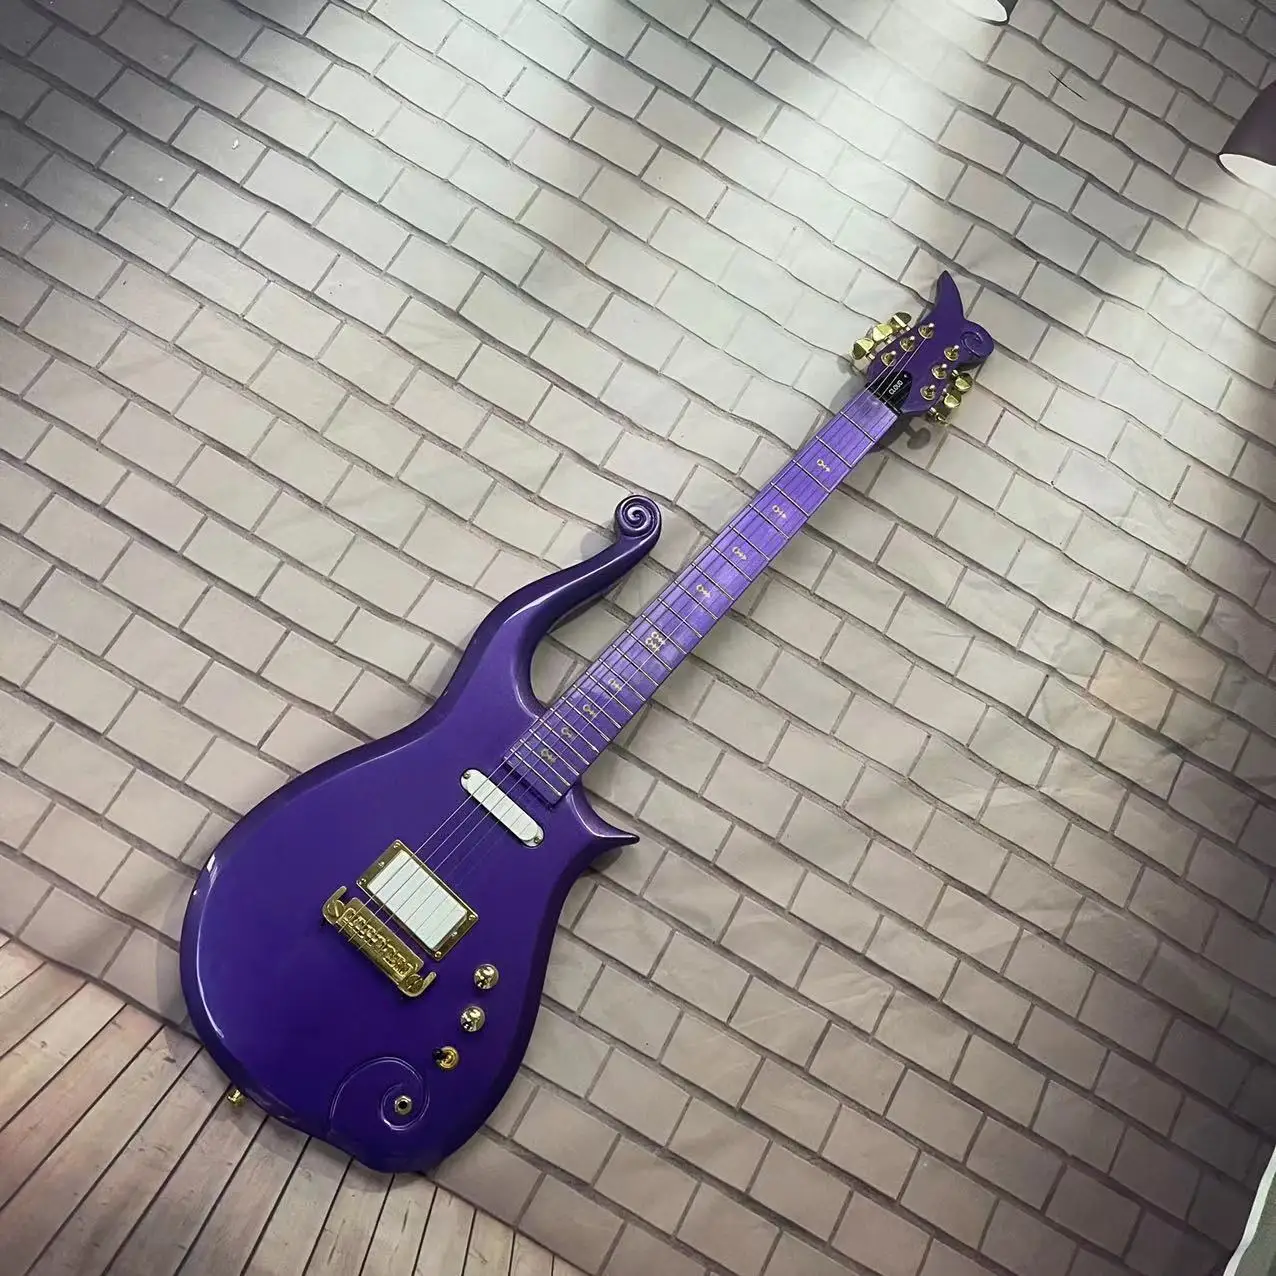 

Электрическая гитара Wangziyun, 6-струнная встроенная электрическая гитара с металлическим фиолетовым корпусом, с высоким блеском, фингерборд из розового дерева, mapl